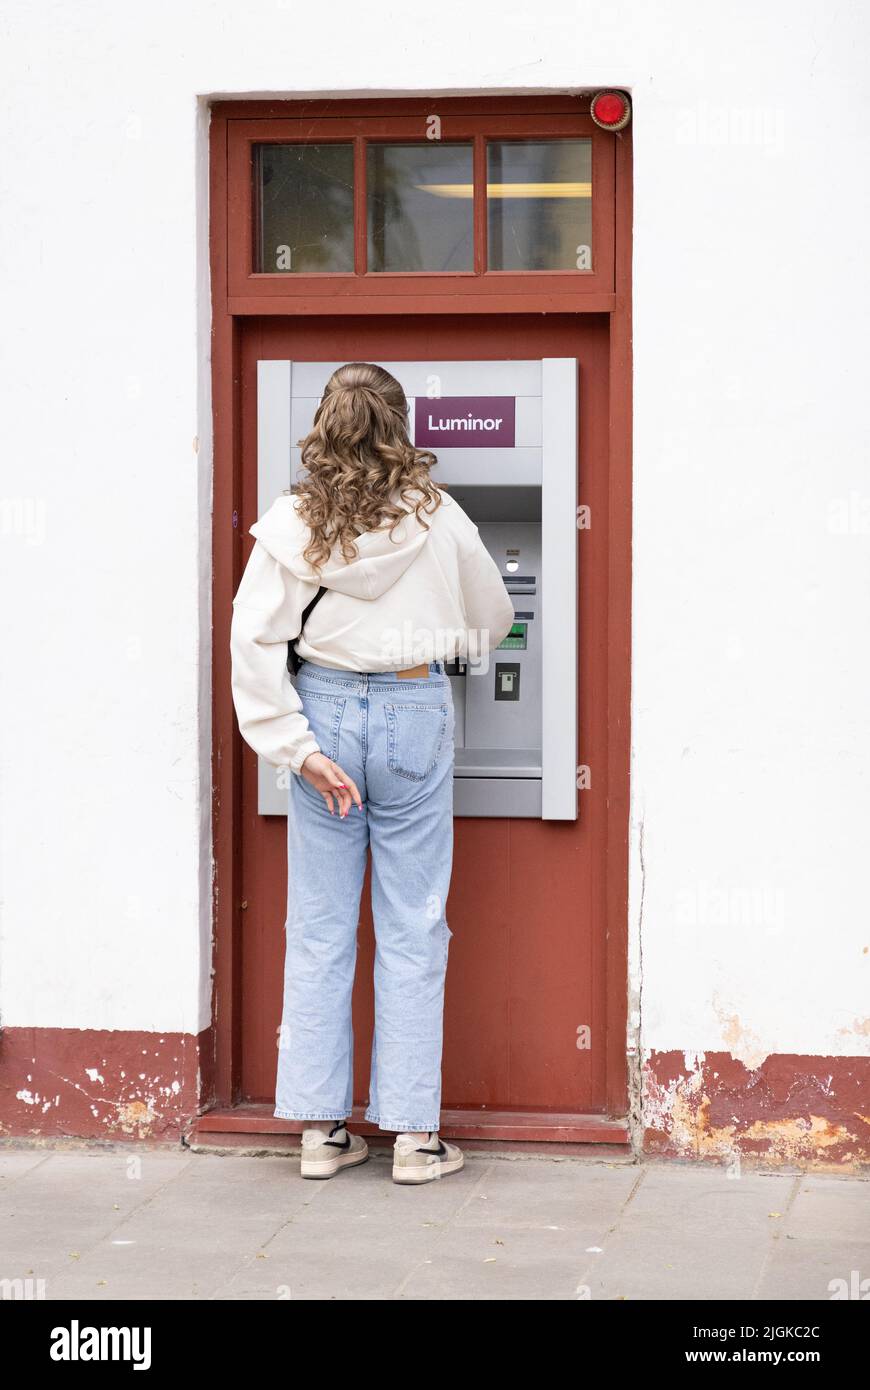 Banco de Estonia - vista trasera de una mujer que obtiene dinero en efectivo de un cajero automático del Banco Luminor, Kuressaare, Estonia, Estados Bálticos, Europa Foto de stock